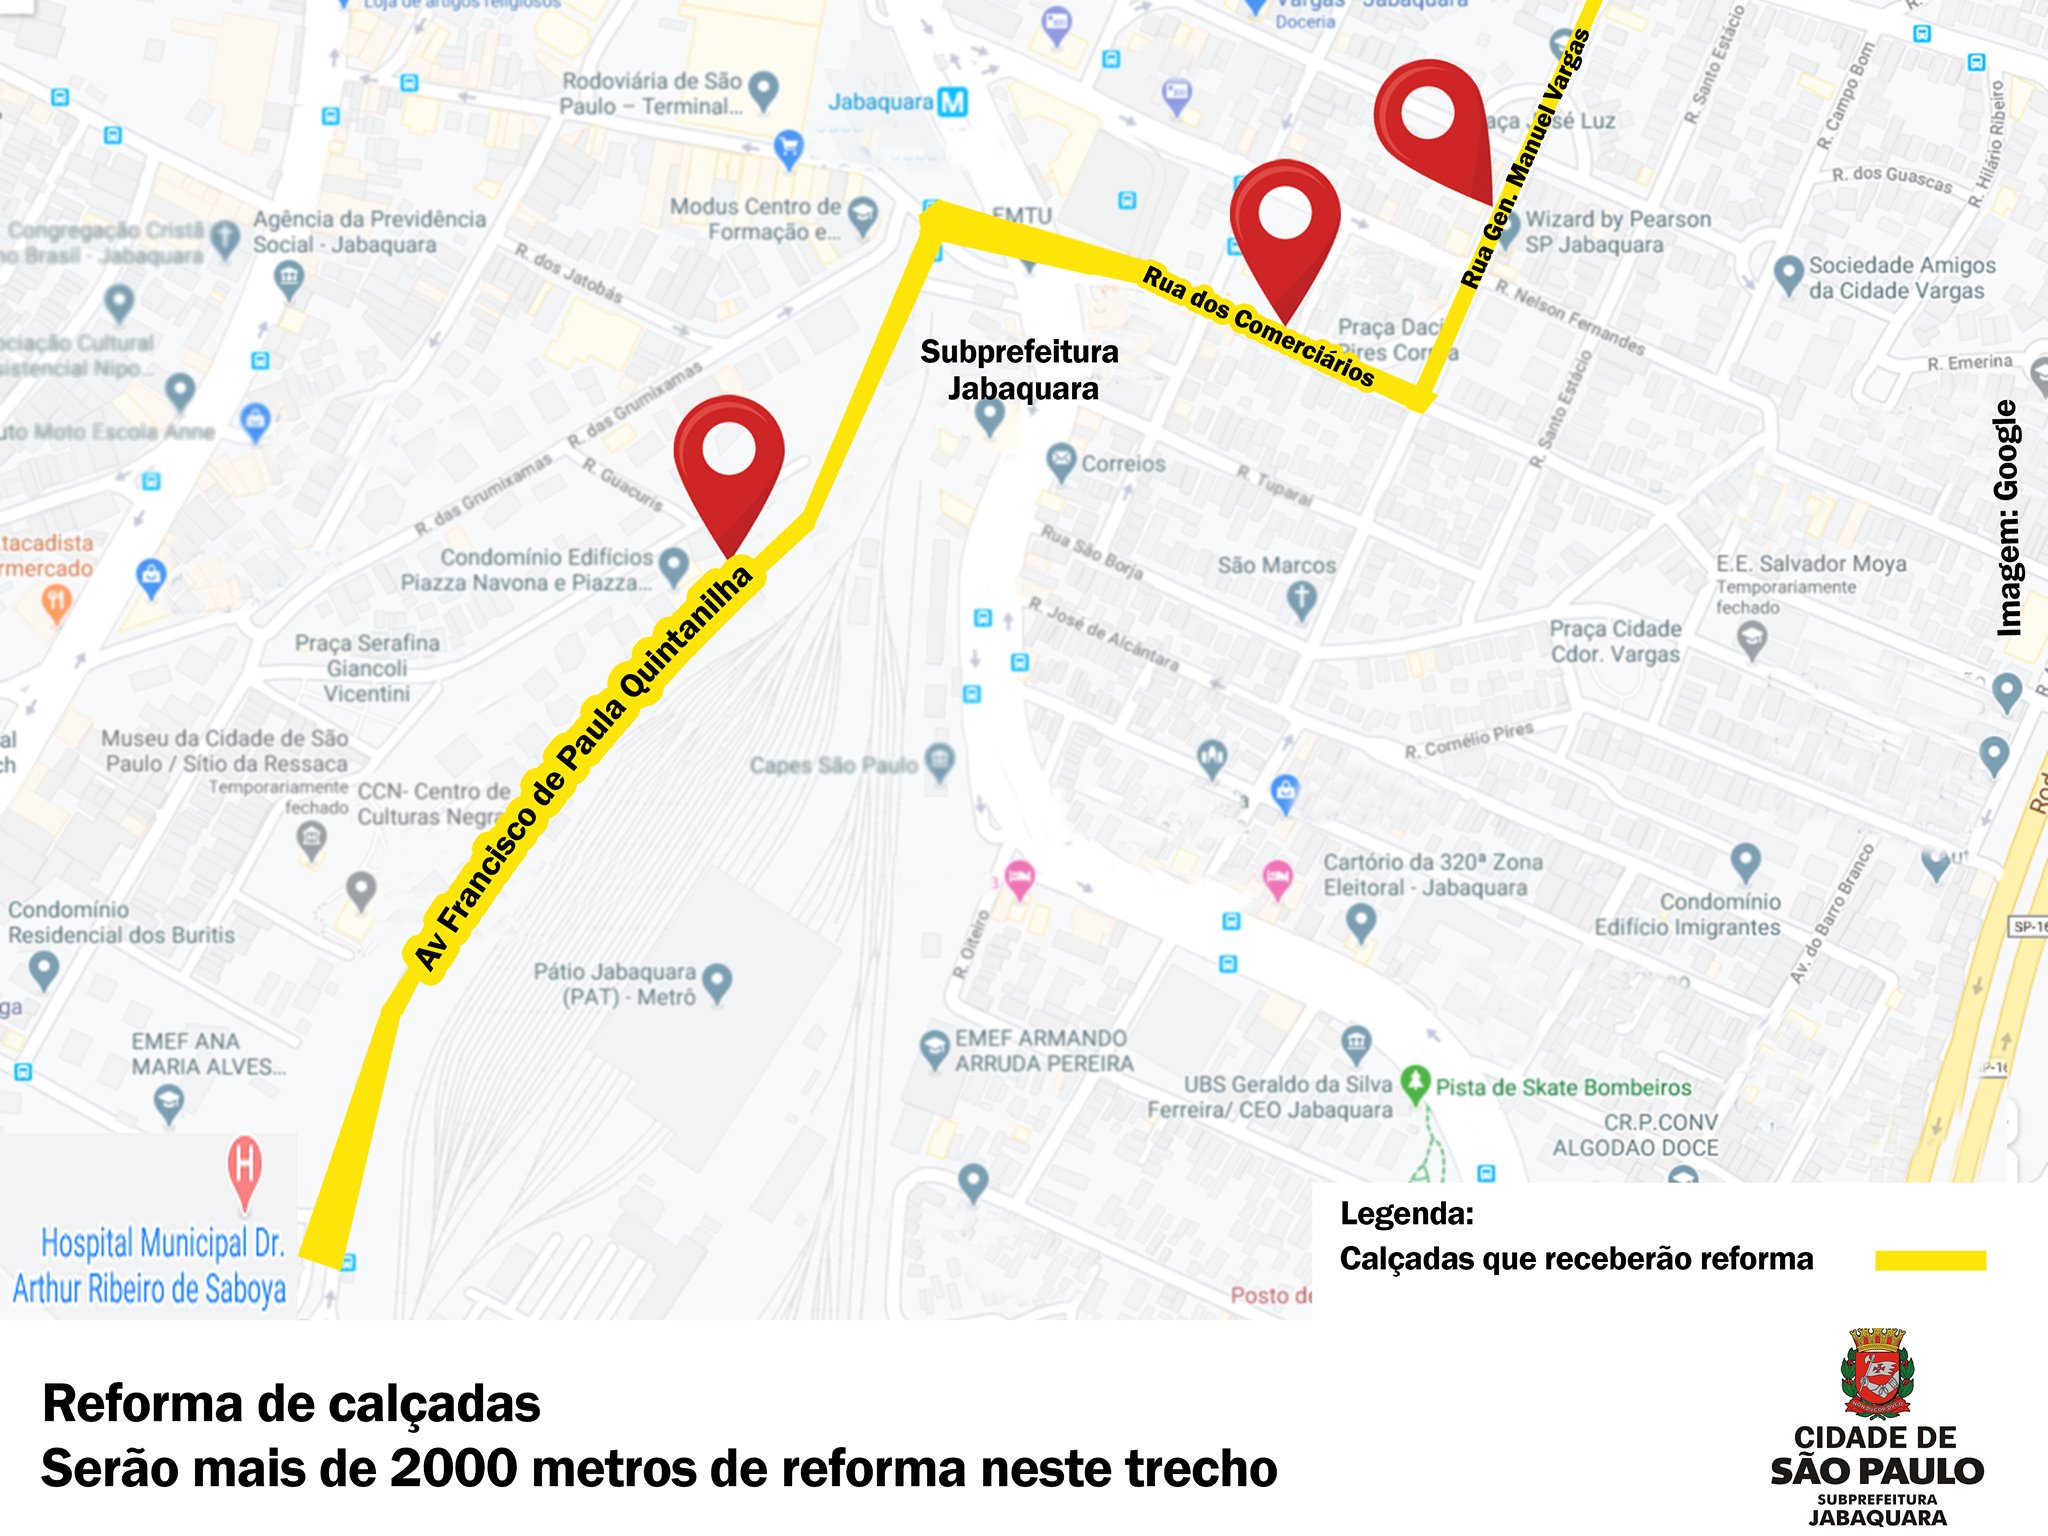 Imagem com o mapa do Jabaquara e pitado na cor amarela as ruas que receberam reformas em suas calçadas.